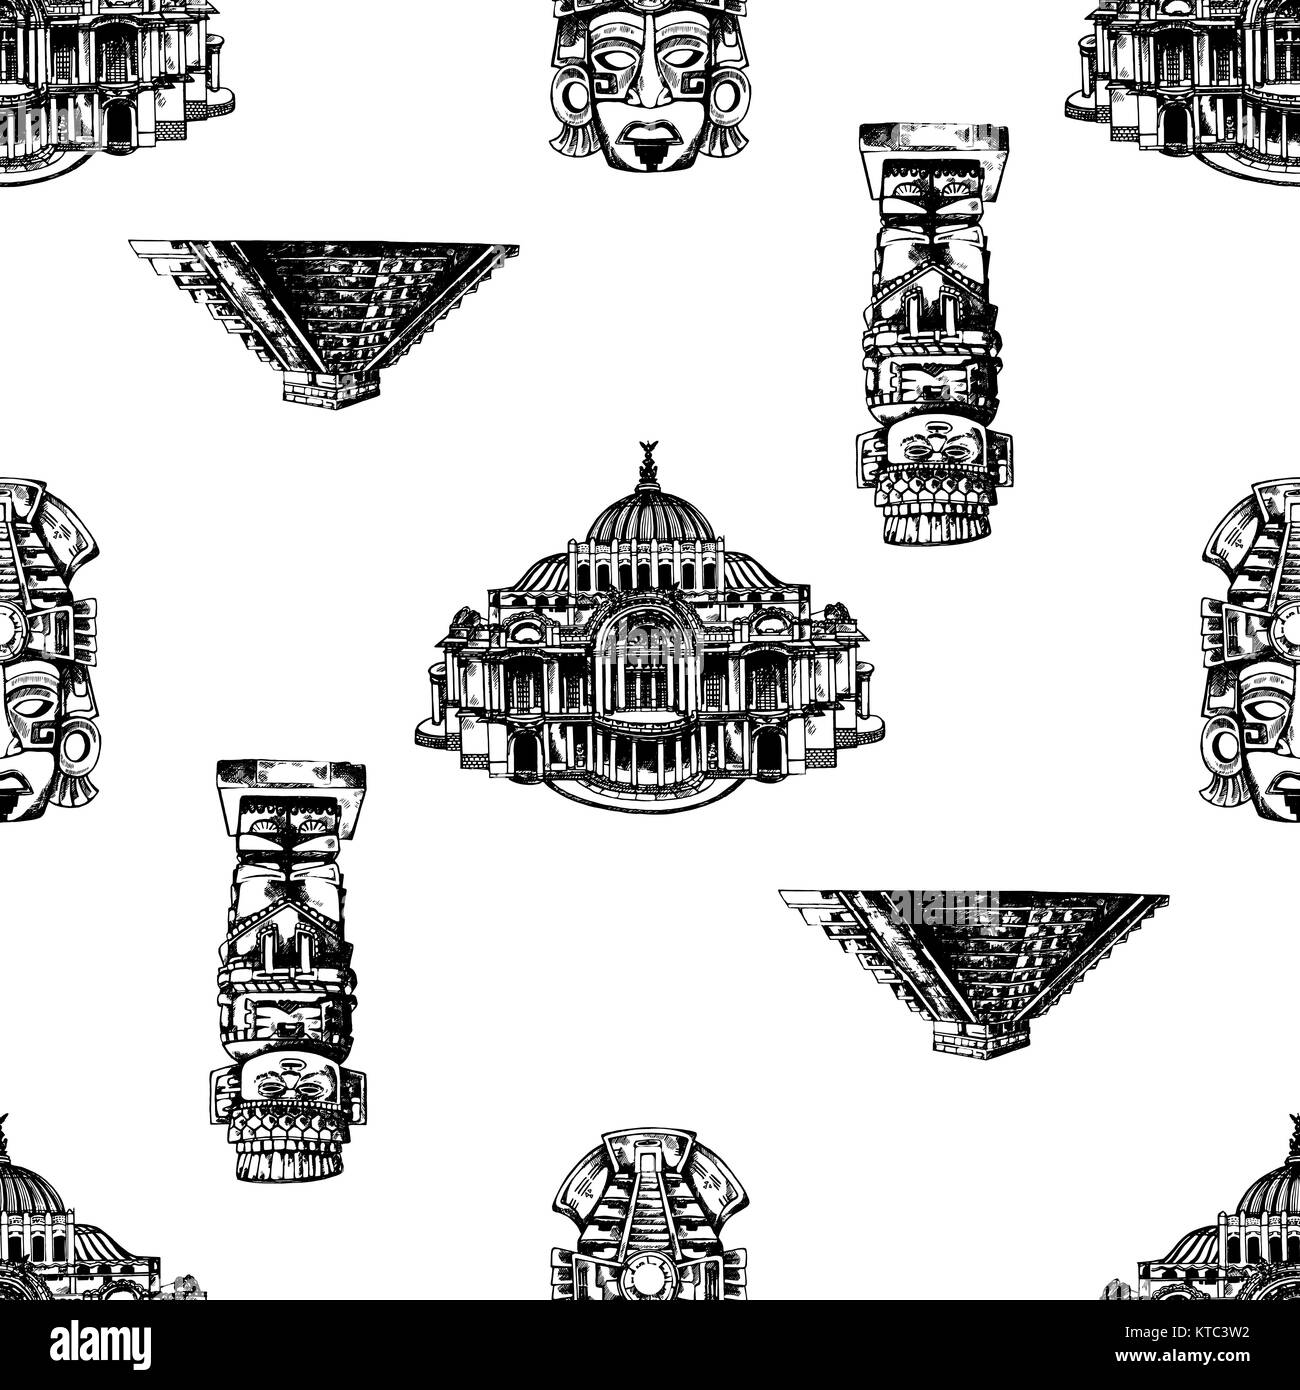 Trama perfecta de estilo boceto dibujados a mano conjunto de monumentos y objetos de temática mexicana. Ilustración vectorial aislado sobre fondo blanco. Ilustración del Vector